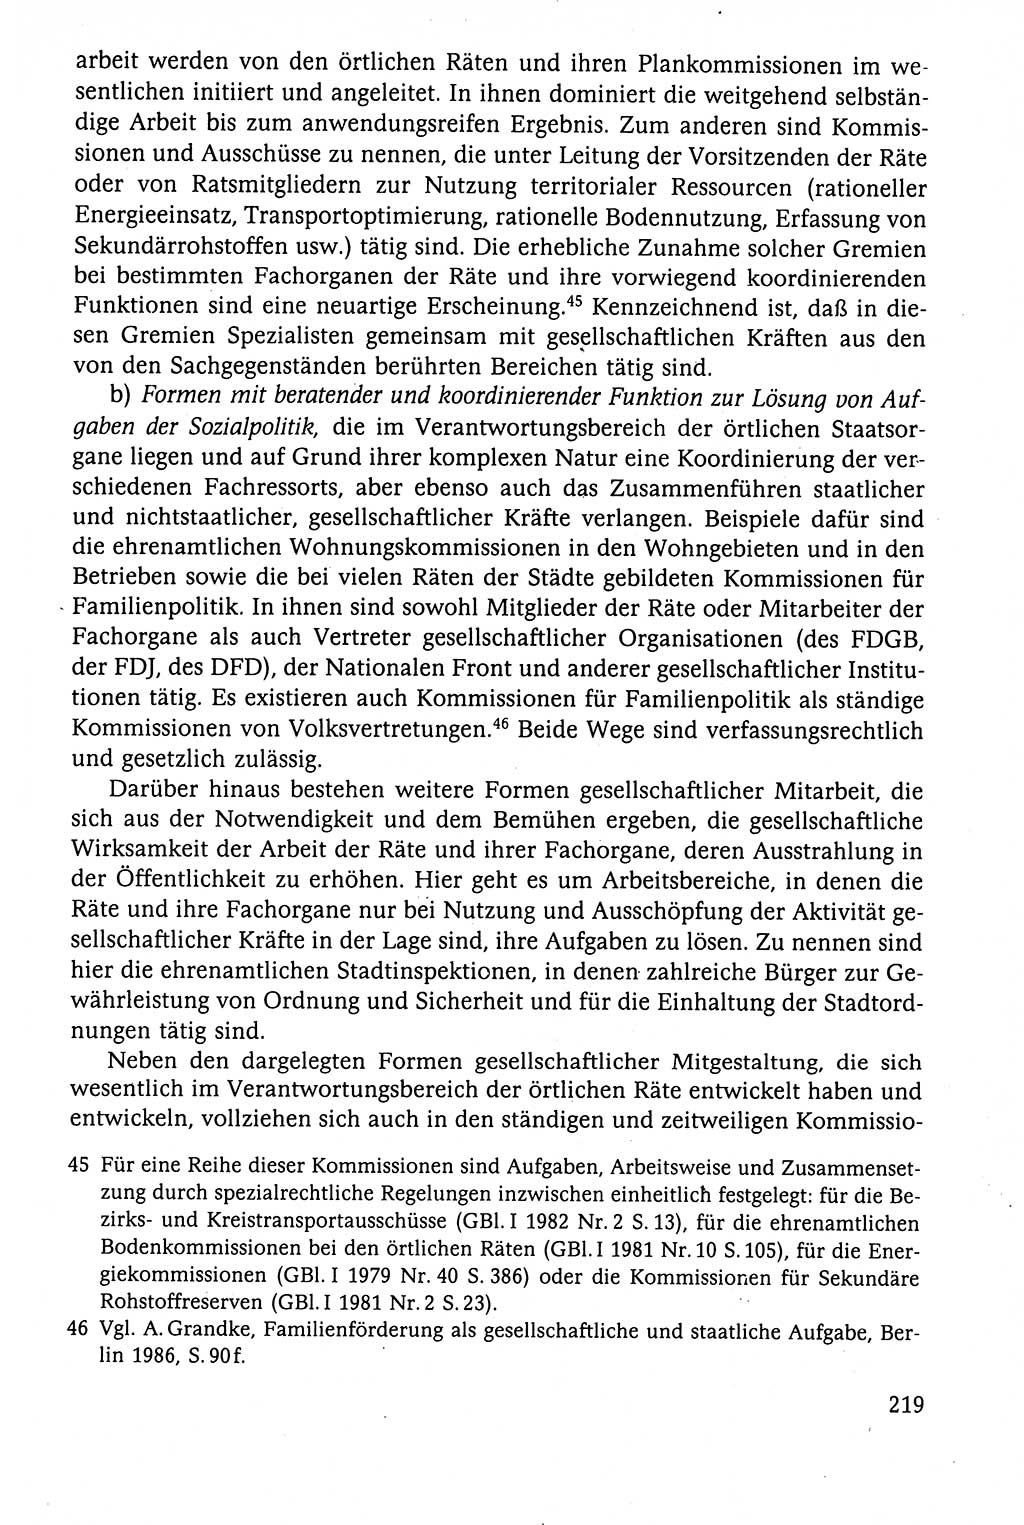 Der Staat im politischen System der DDR (Deutsche Demokratische Republik) 1986, Seite 219 (St. pol. Sys. DDR 1986, S. 219)